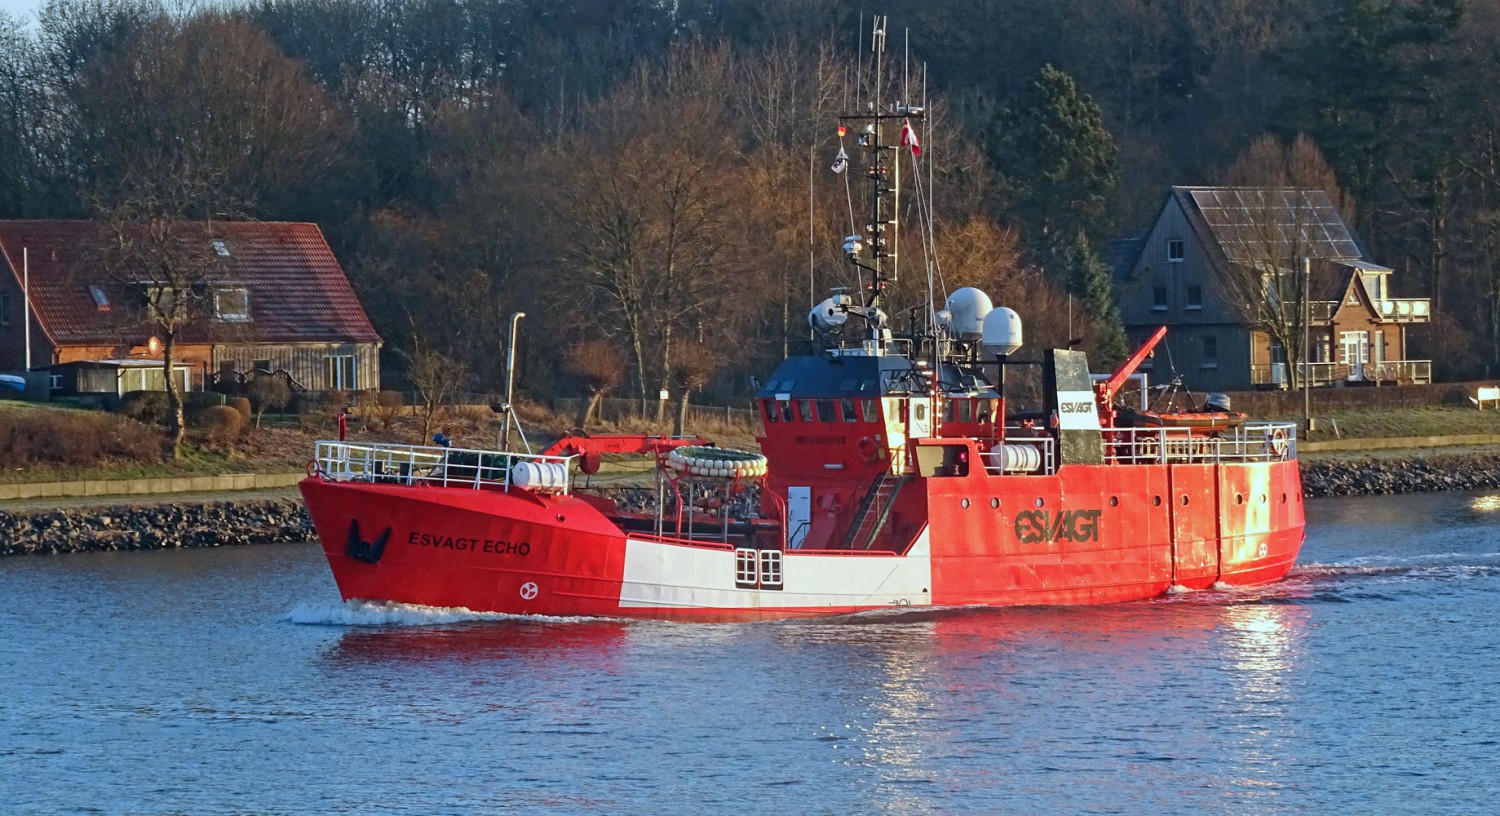 Die "Esvagt Echo" ist ein Sicherheitsschiff und wird überwiegend in der Nordsee eingesetzt.